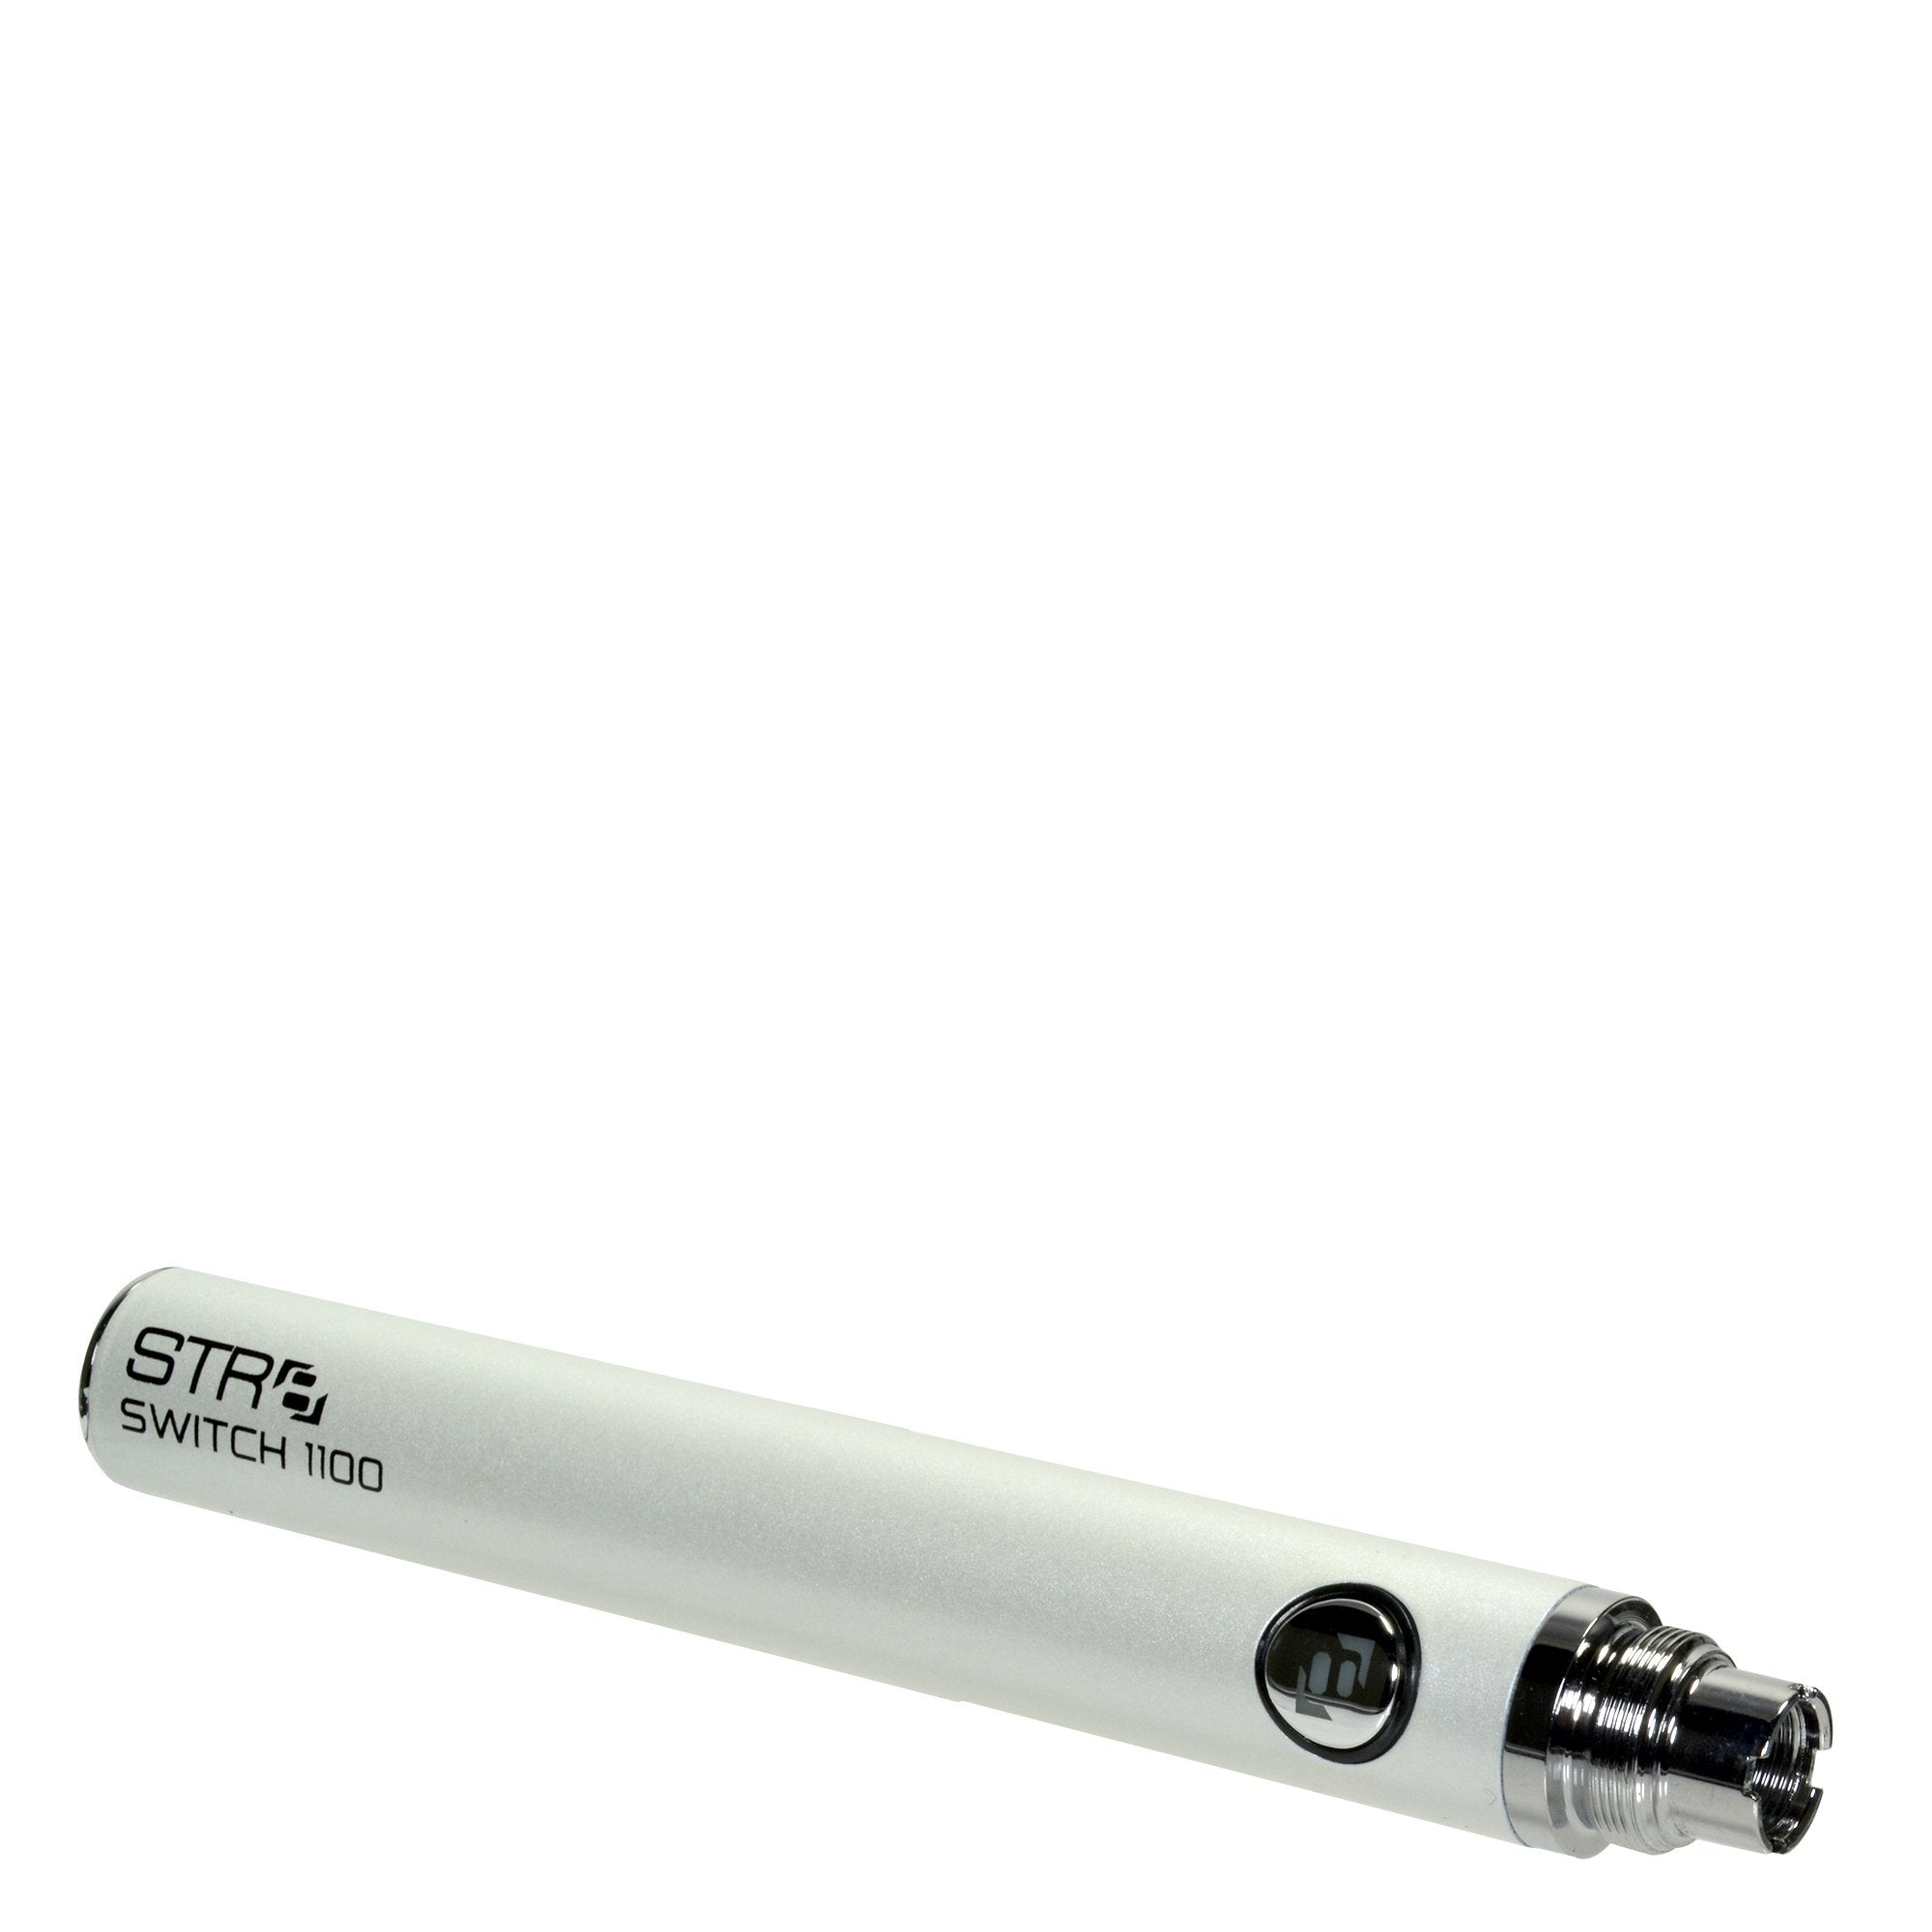 STR8 | Switch Evod Vape Vape Batteries | 1100mAh - White - 5 Count - 6